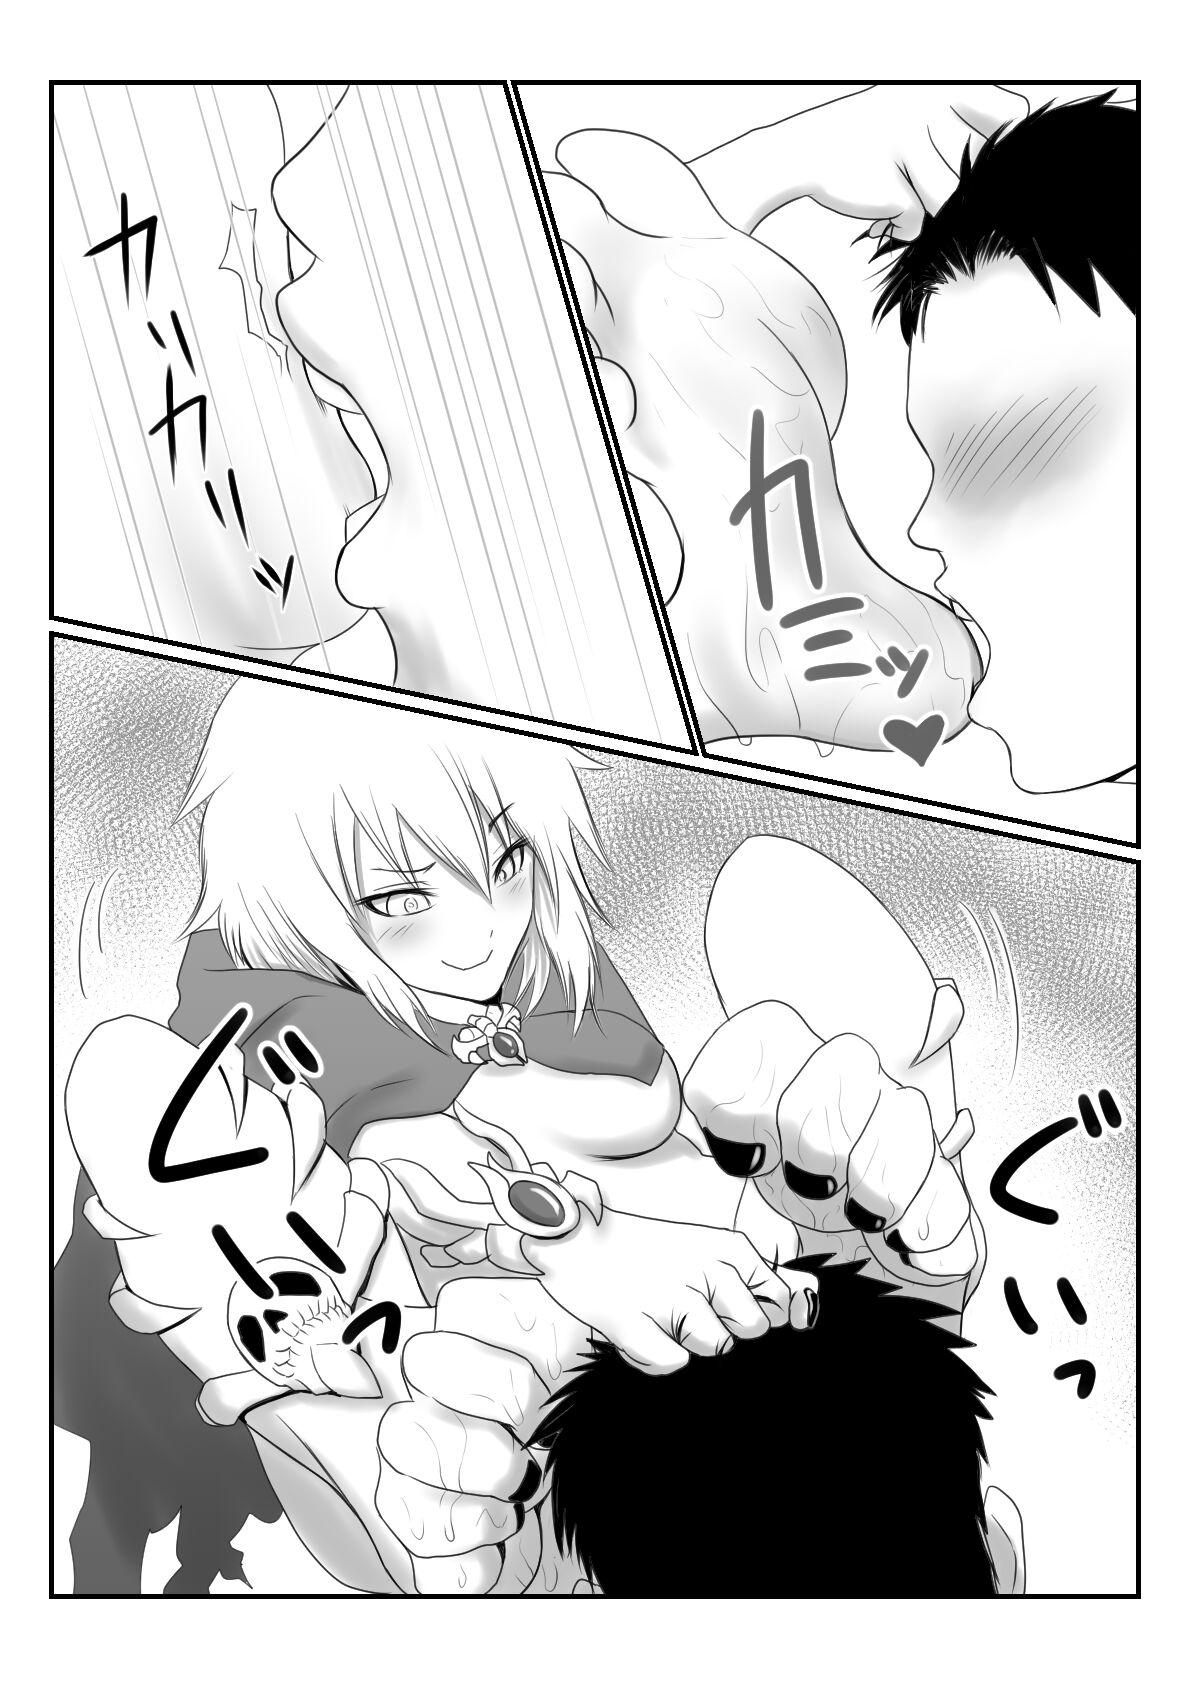 Lich Manga 8